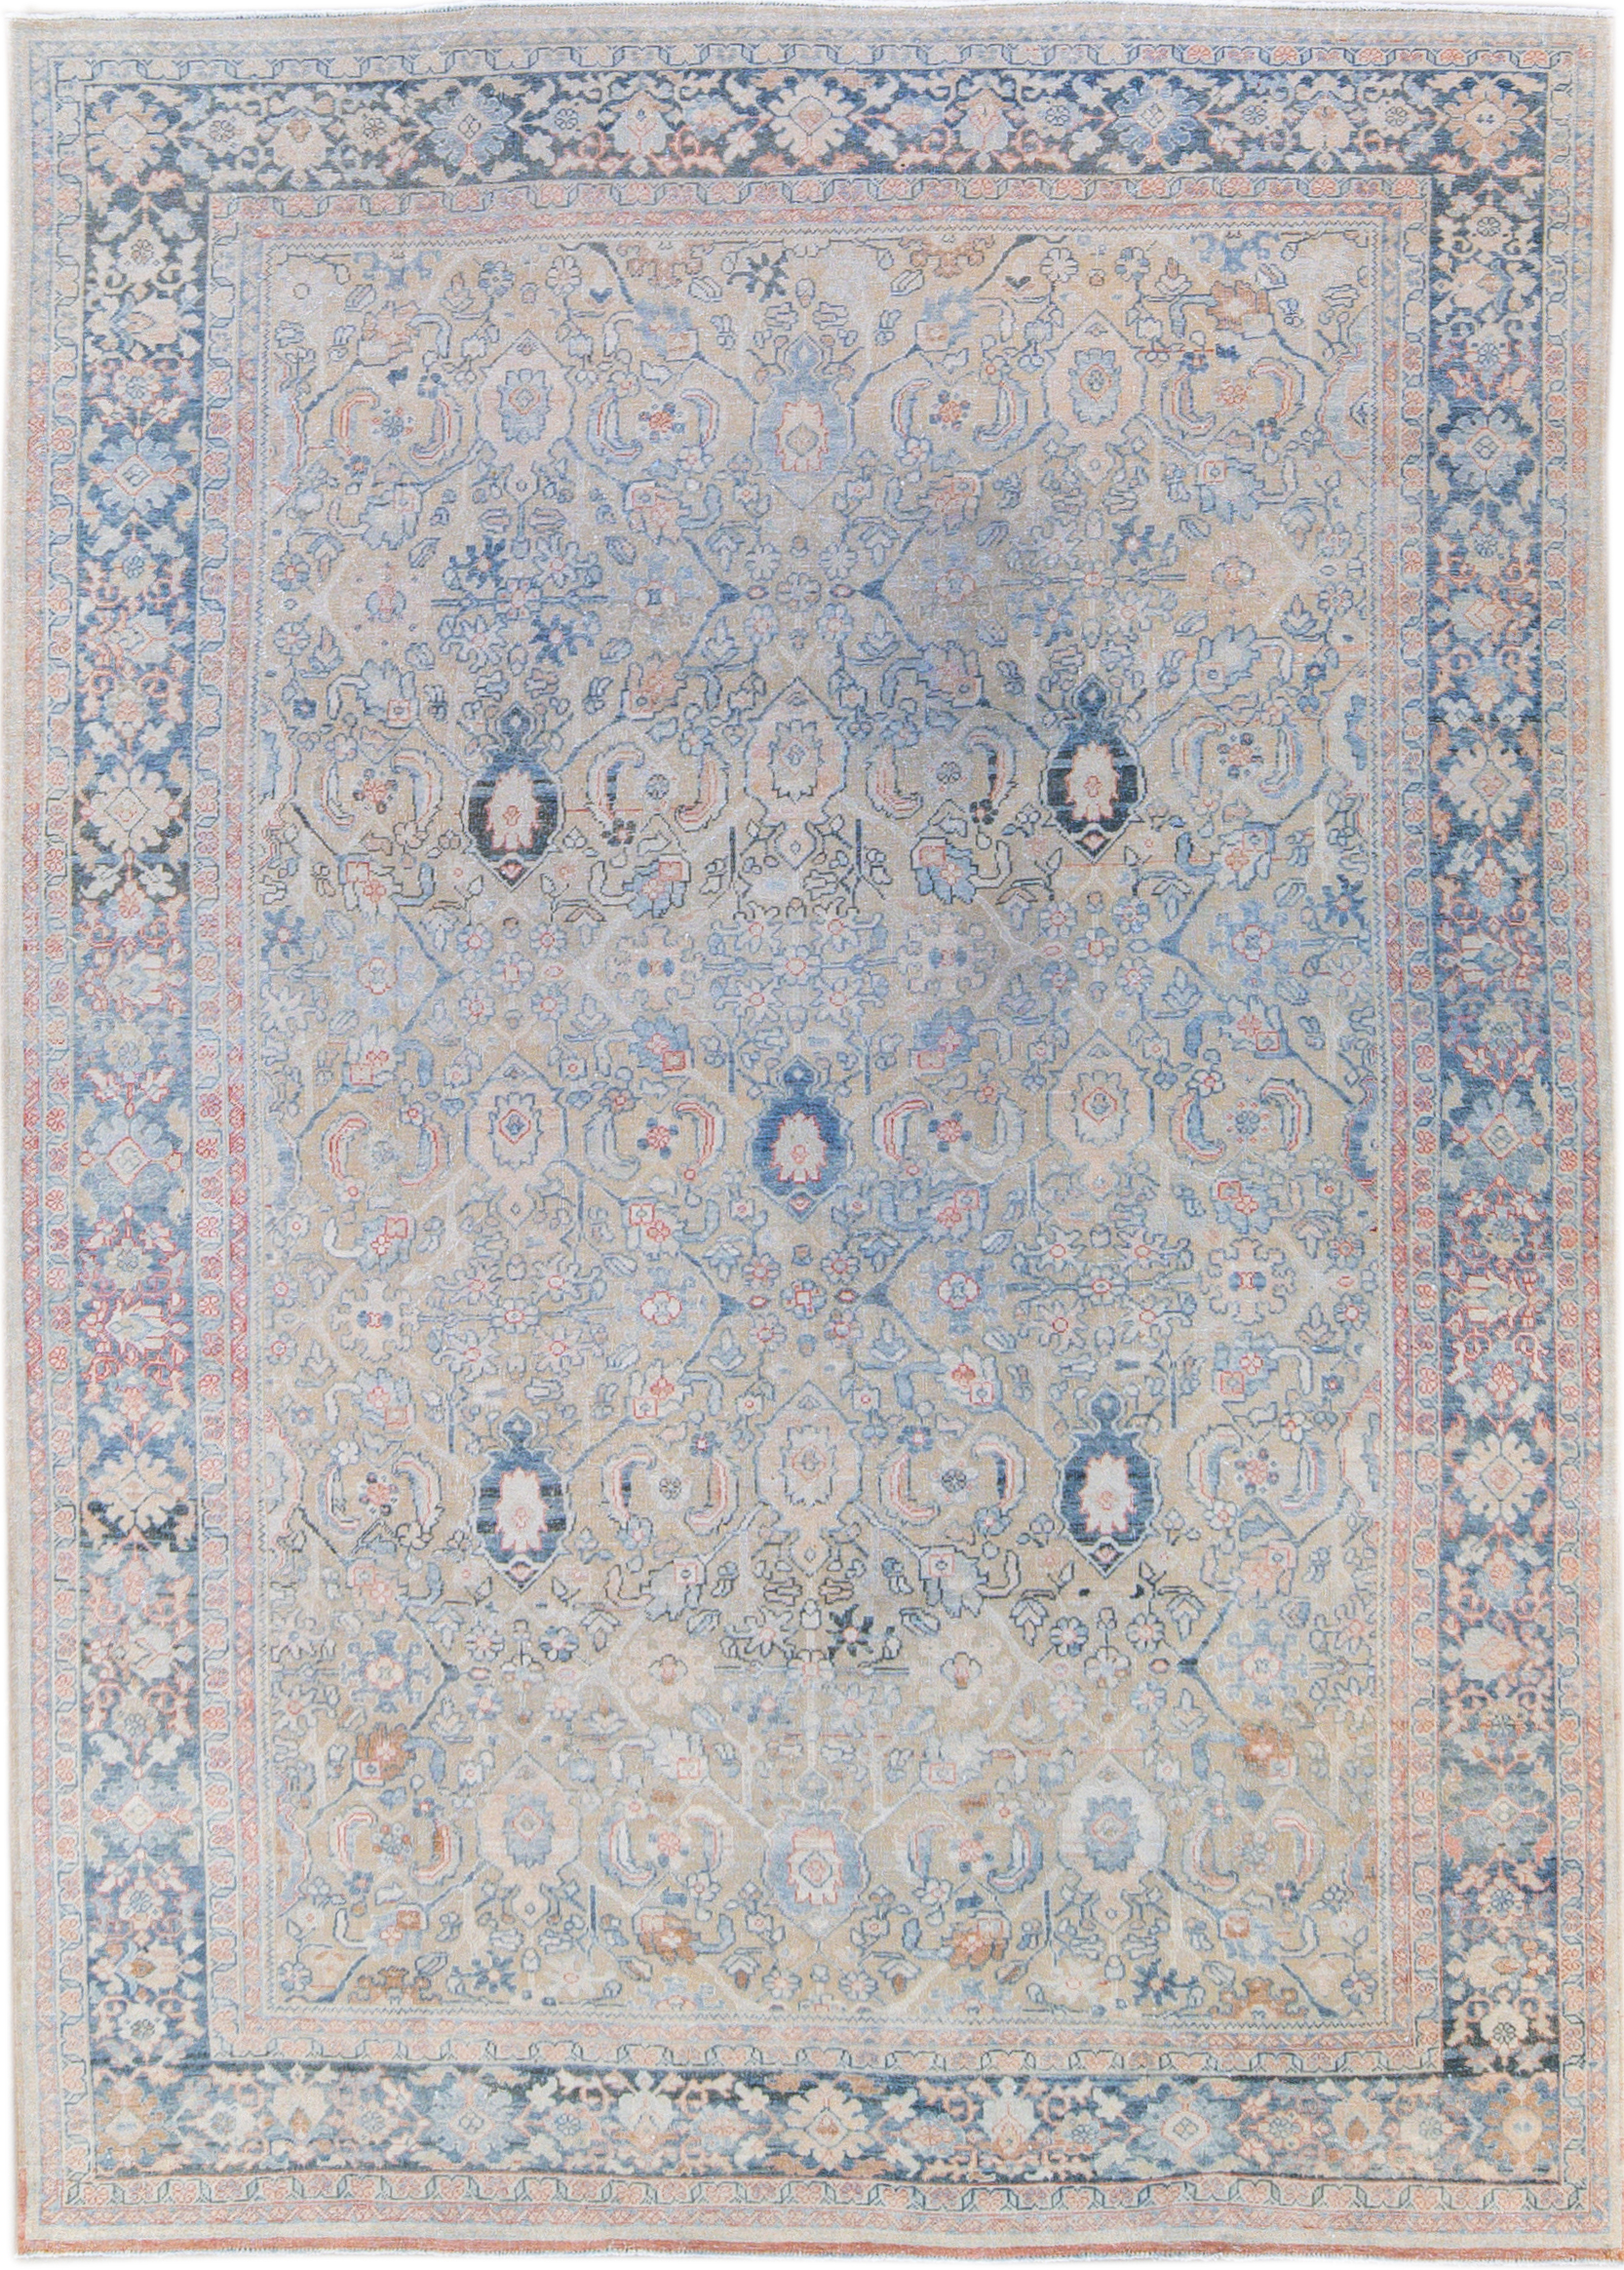 Antique Persian Mahal Rug 9'1" x 12' 5"~P77663608